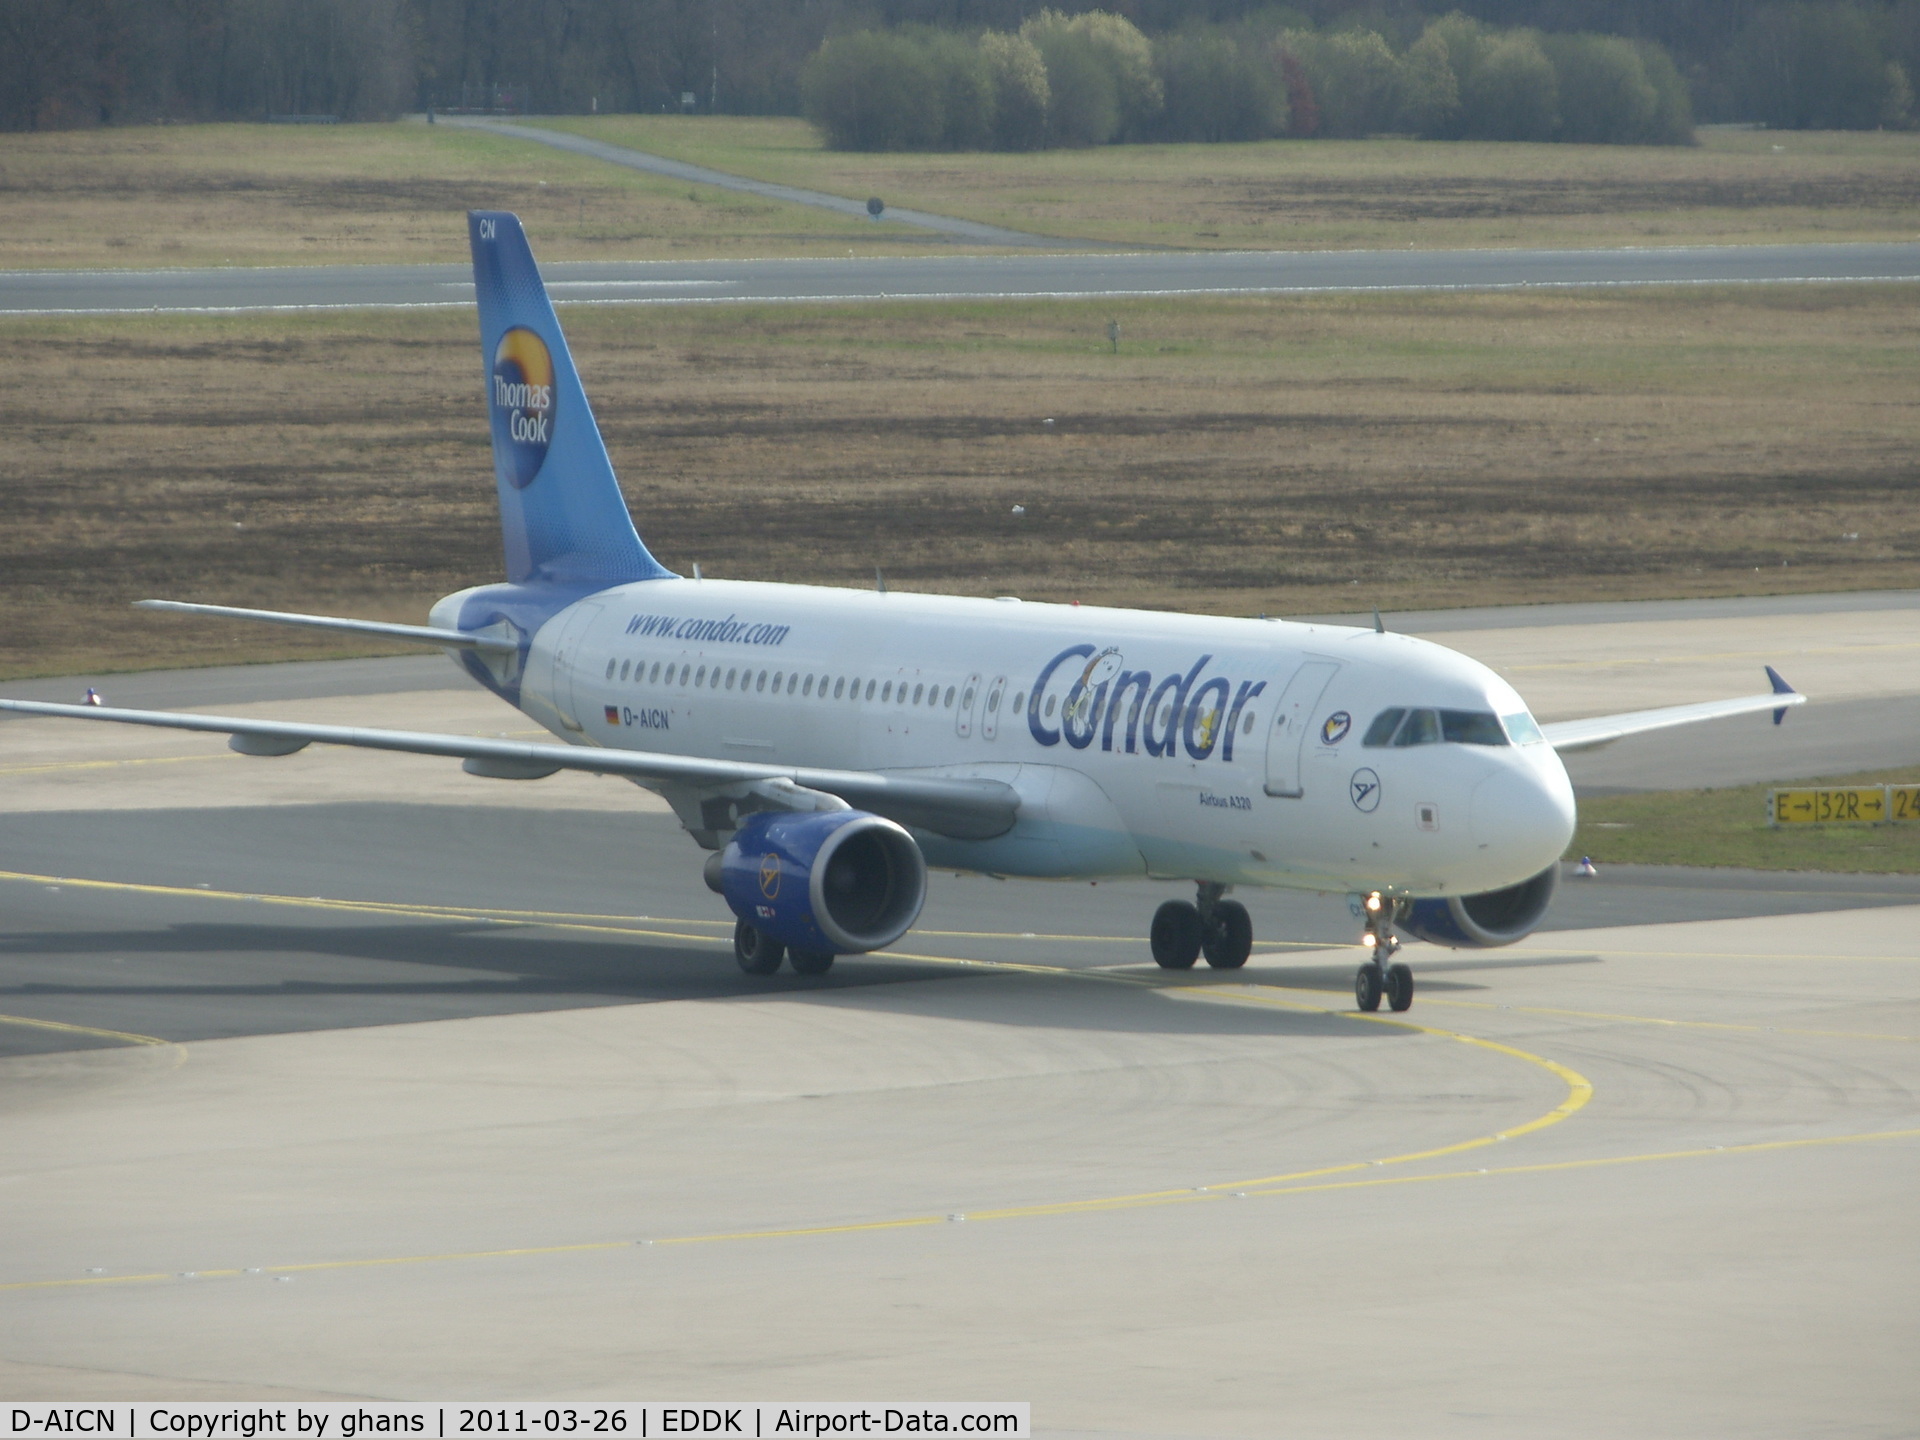 D-AICN, 2003 Airbus A320-214 C/N 1968, Condor